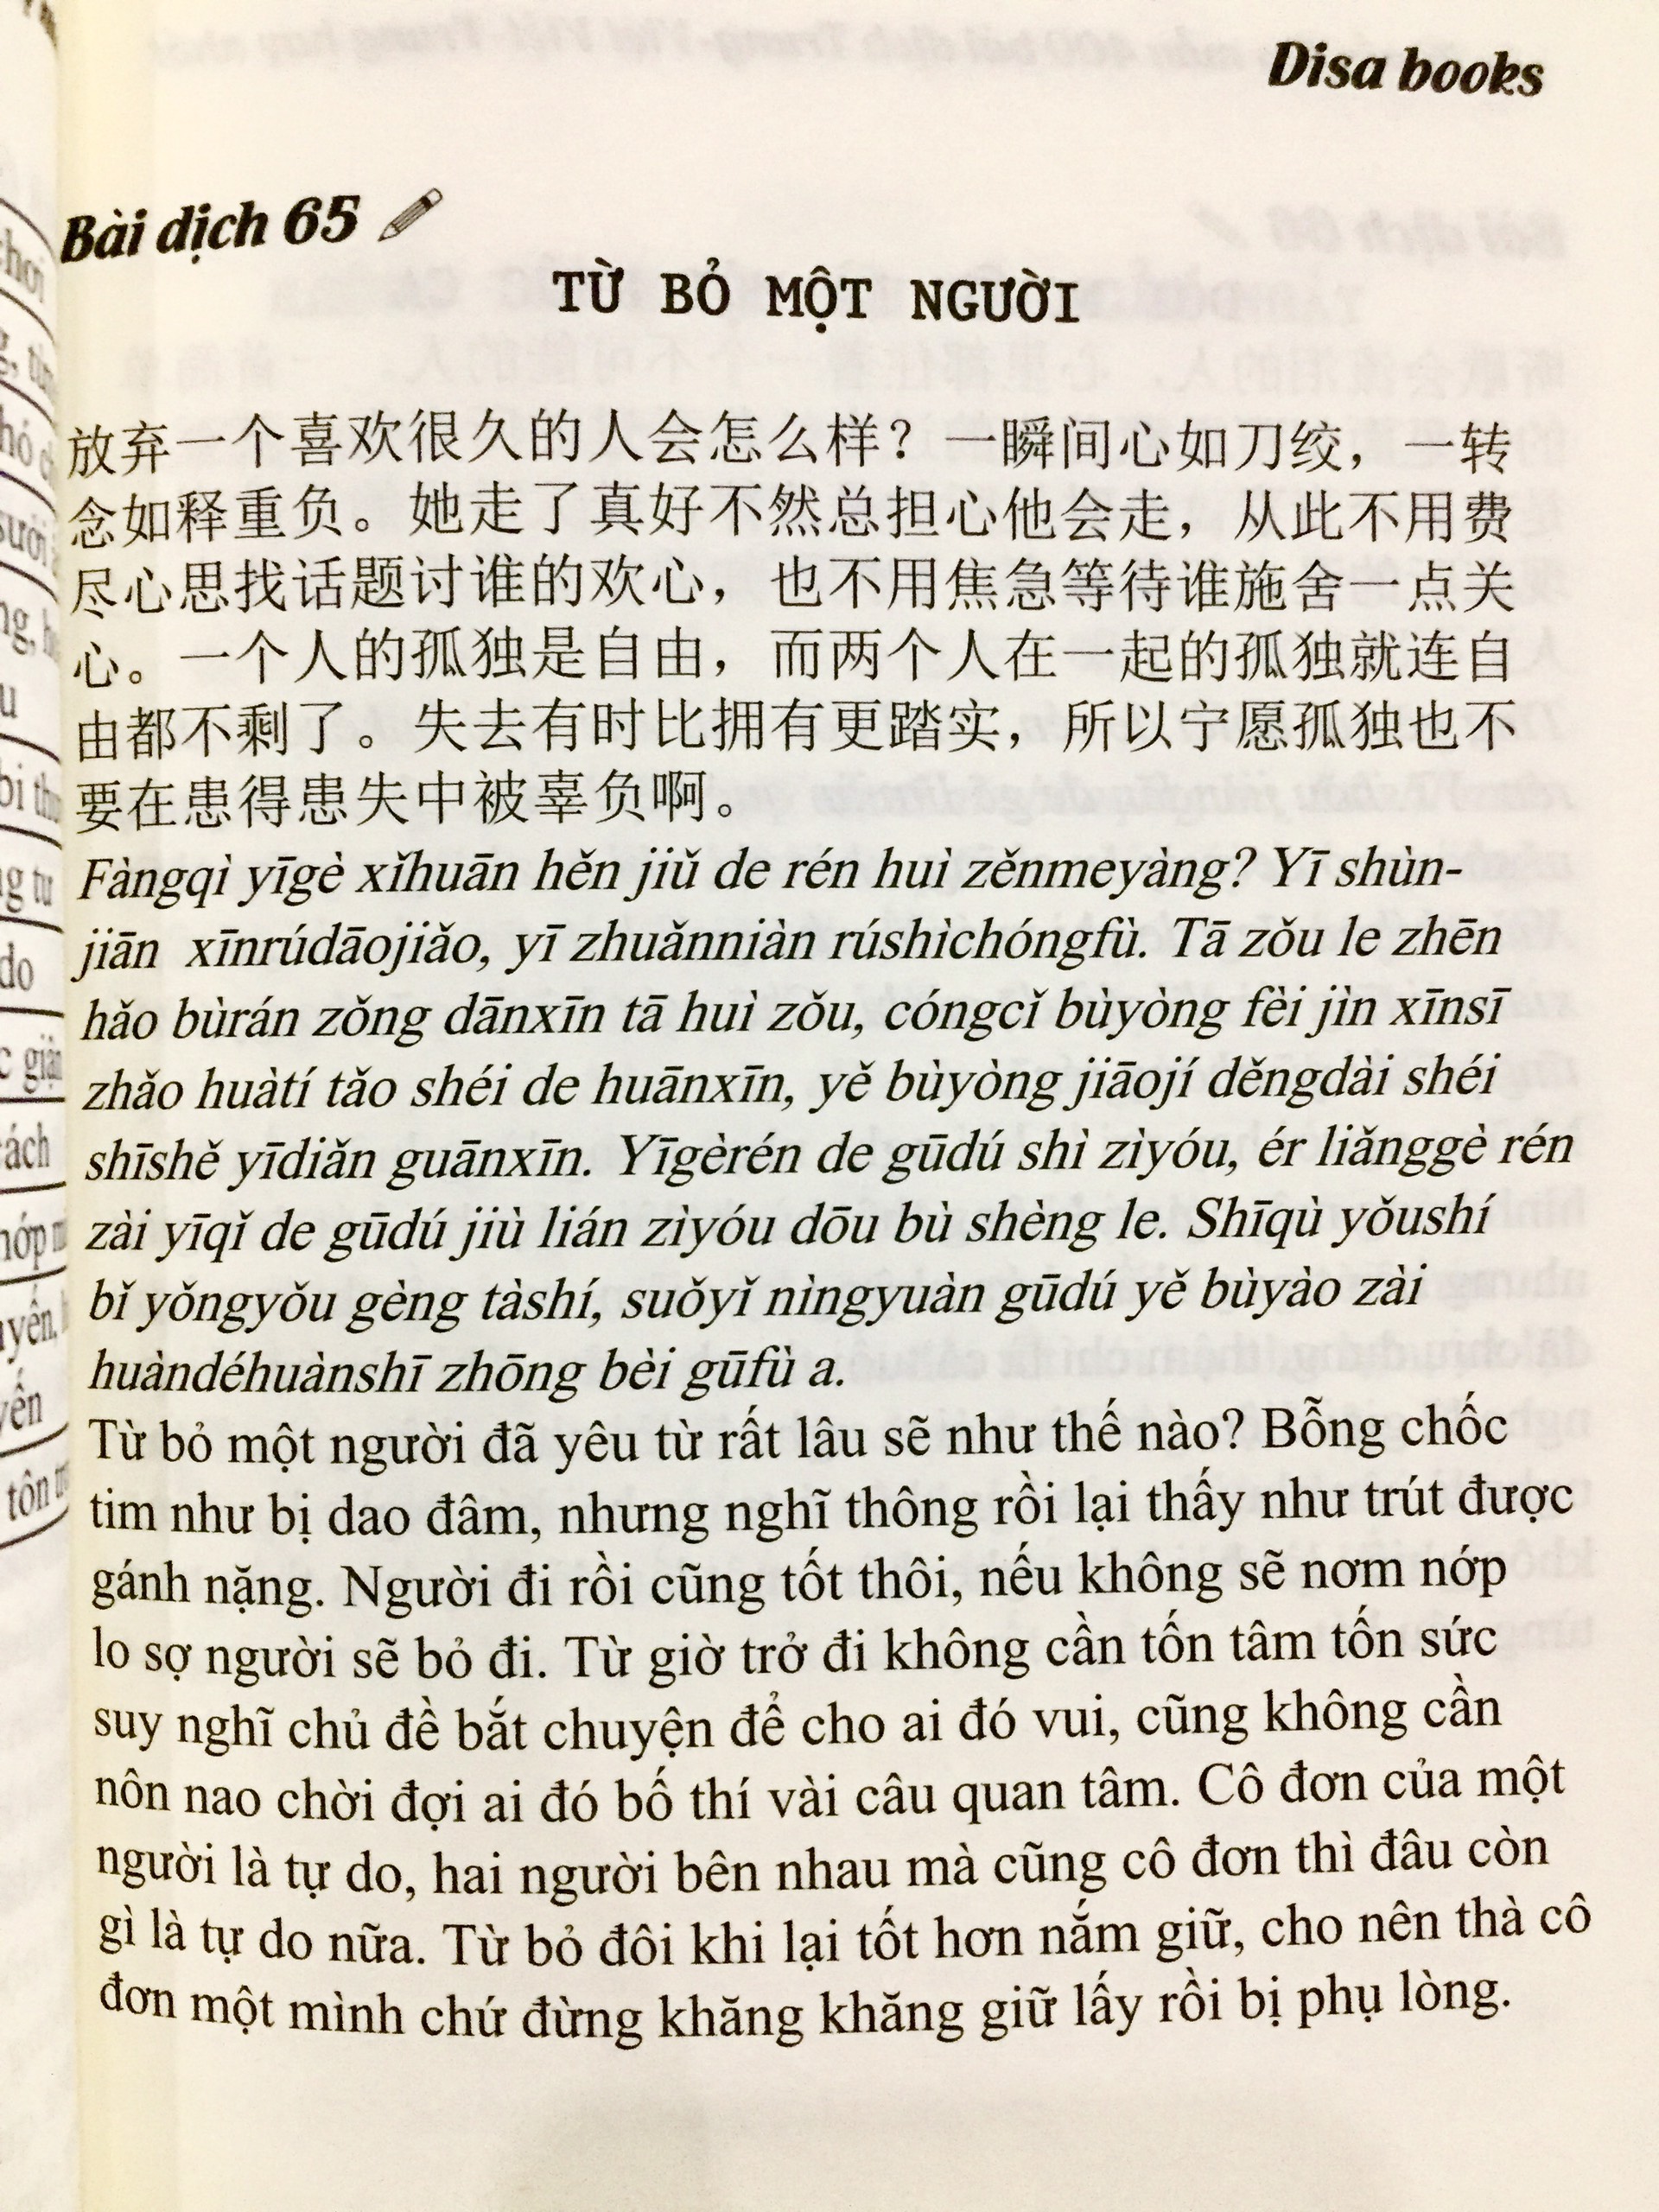 Combo 2 sách Tuyển tập 400 mẫu bài dịch Trung - Việt - Việt Trung hay nhất + Siêu trí nhớ chữ Hán tập 01 +  DVD quà tặng.